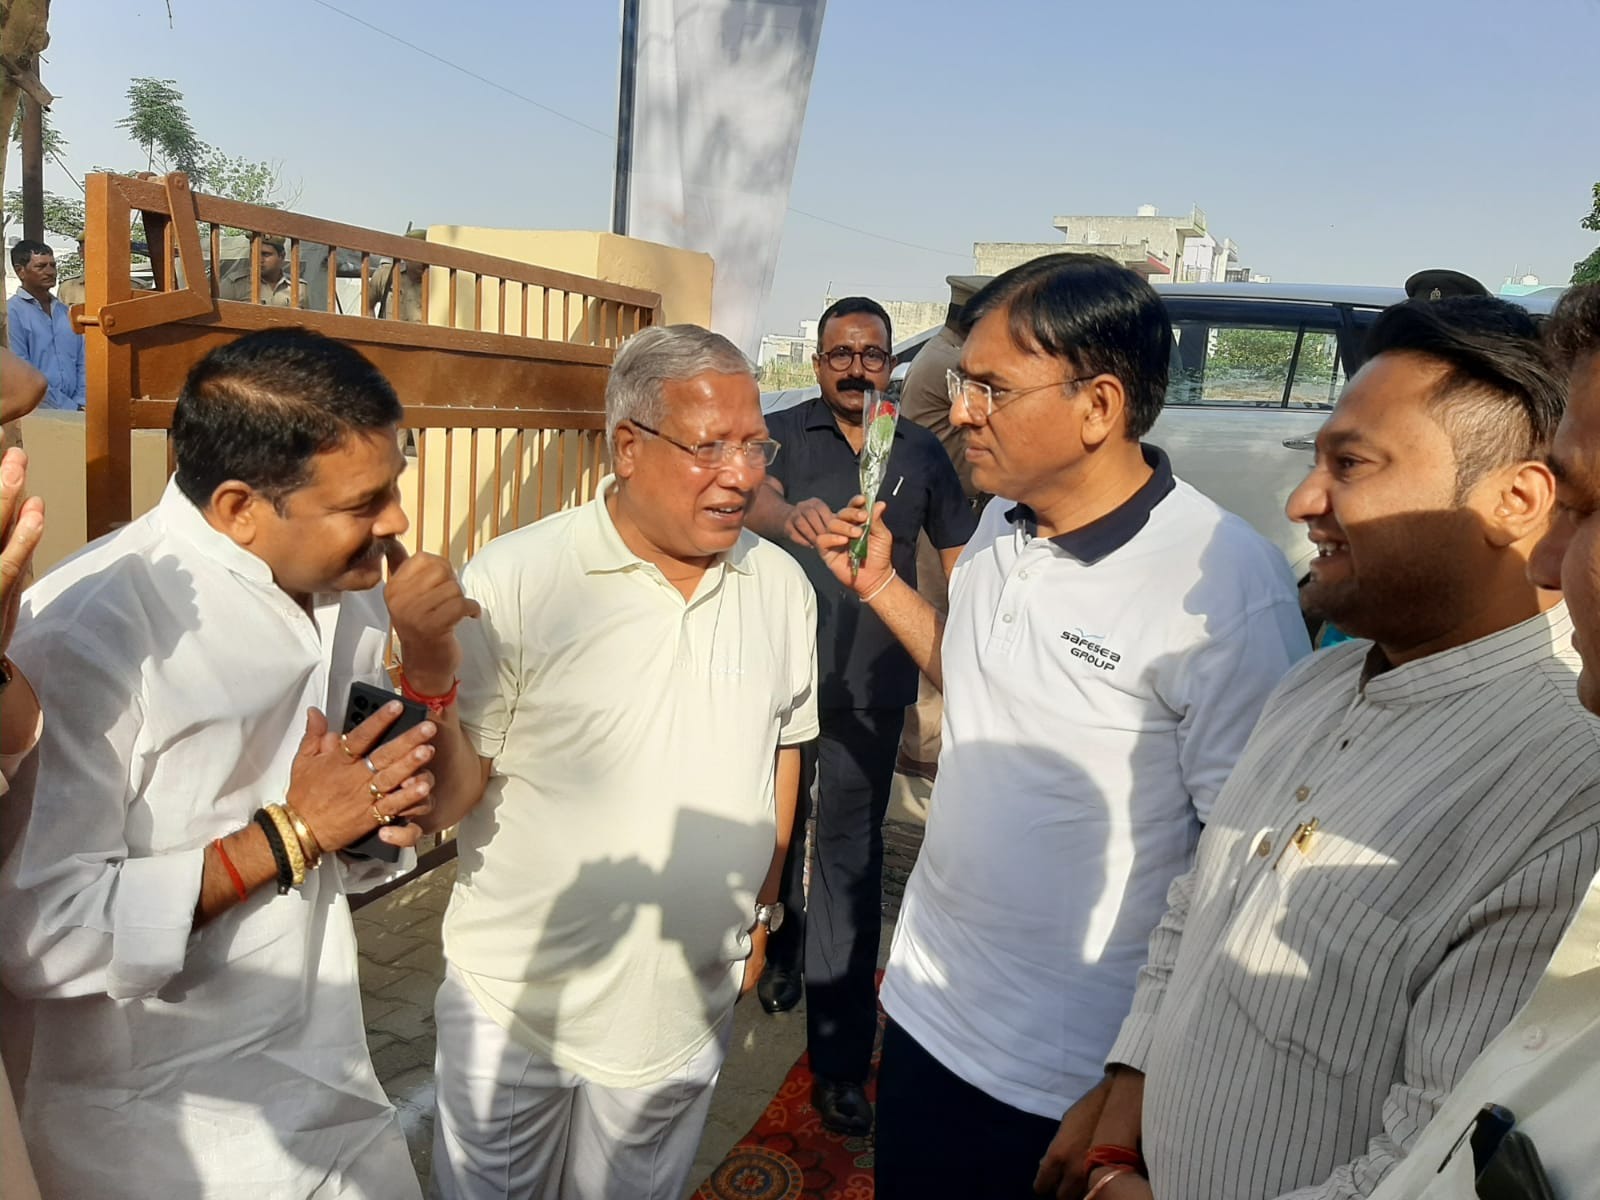 Union Health Minister in Meerut : प्रदेश के सभी ब्लाकों में लगेगा स्वास्थ्य मेला, एक सप्ताह होगी सभी जांचे मुफ्त